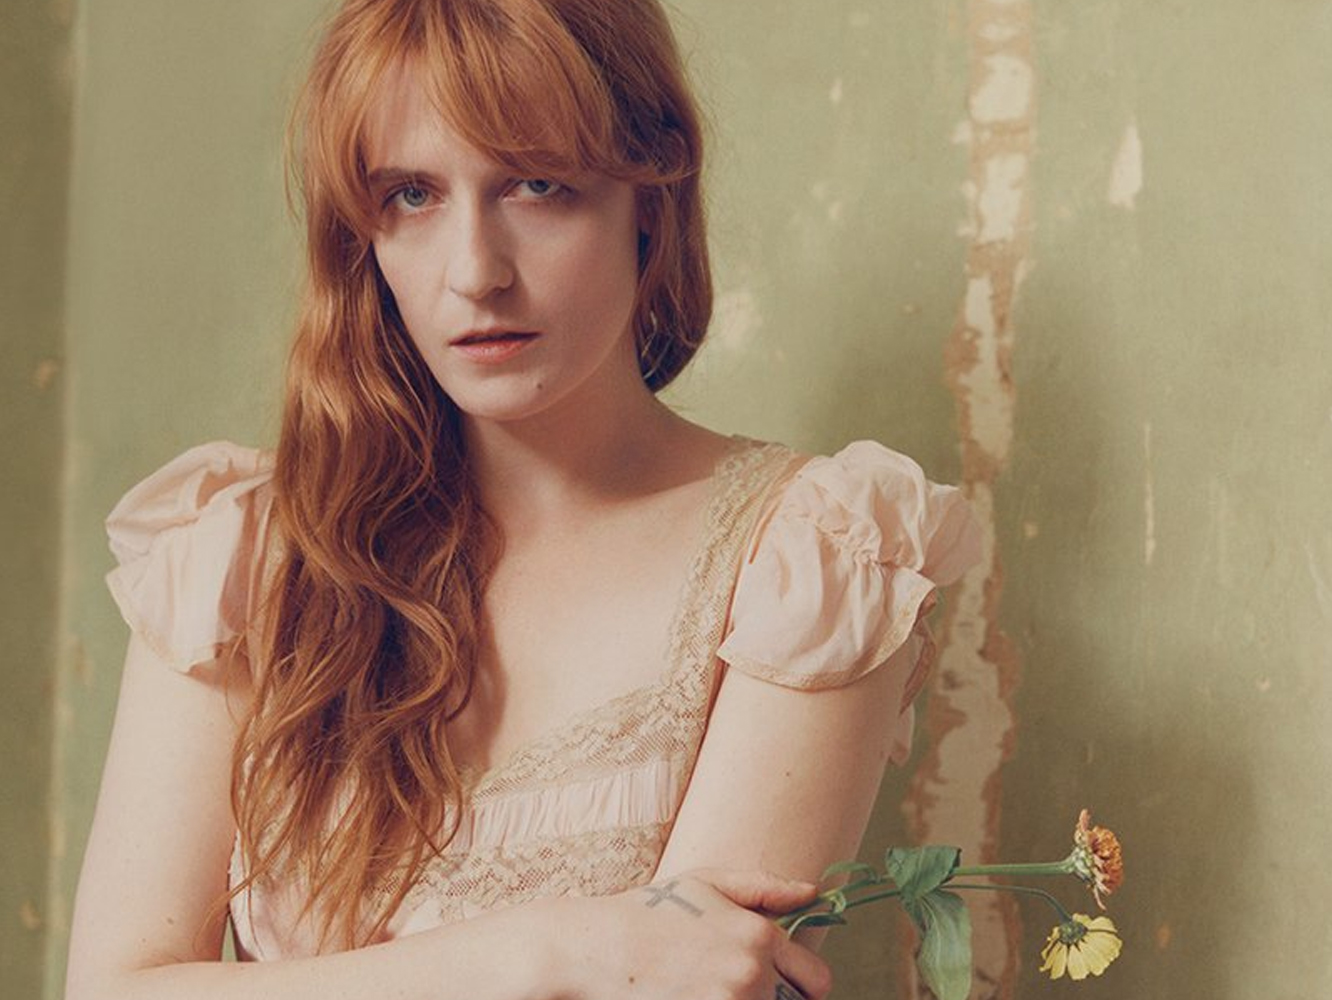  Florence + The Machine lanza ‘Hunger’ y presenta la carátula del nuevo álbum, ‘High As Hope’